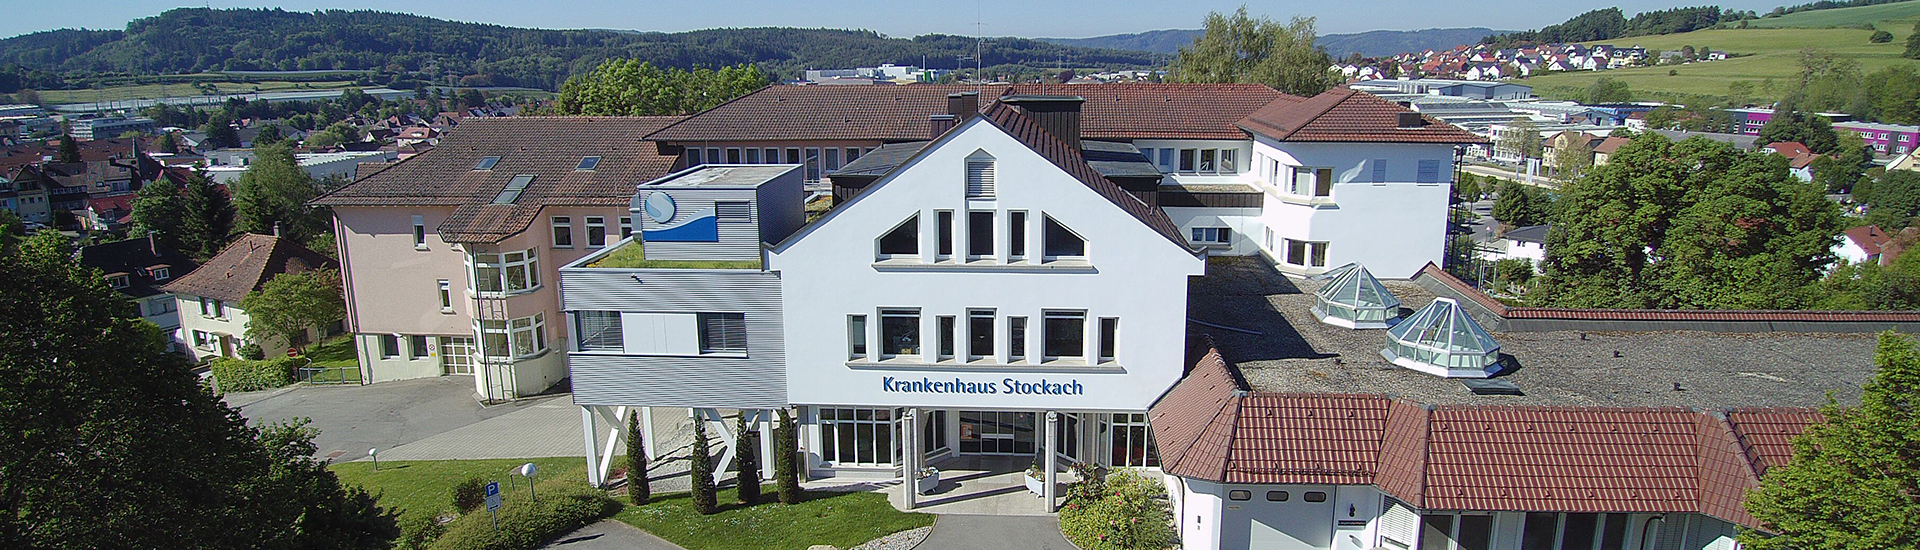 Gebäude des Krankenhaus Stockach